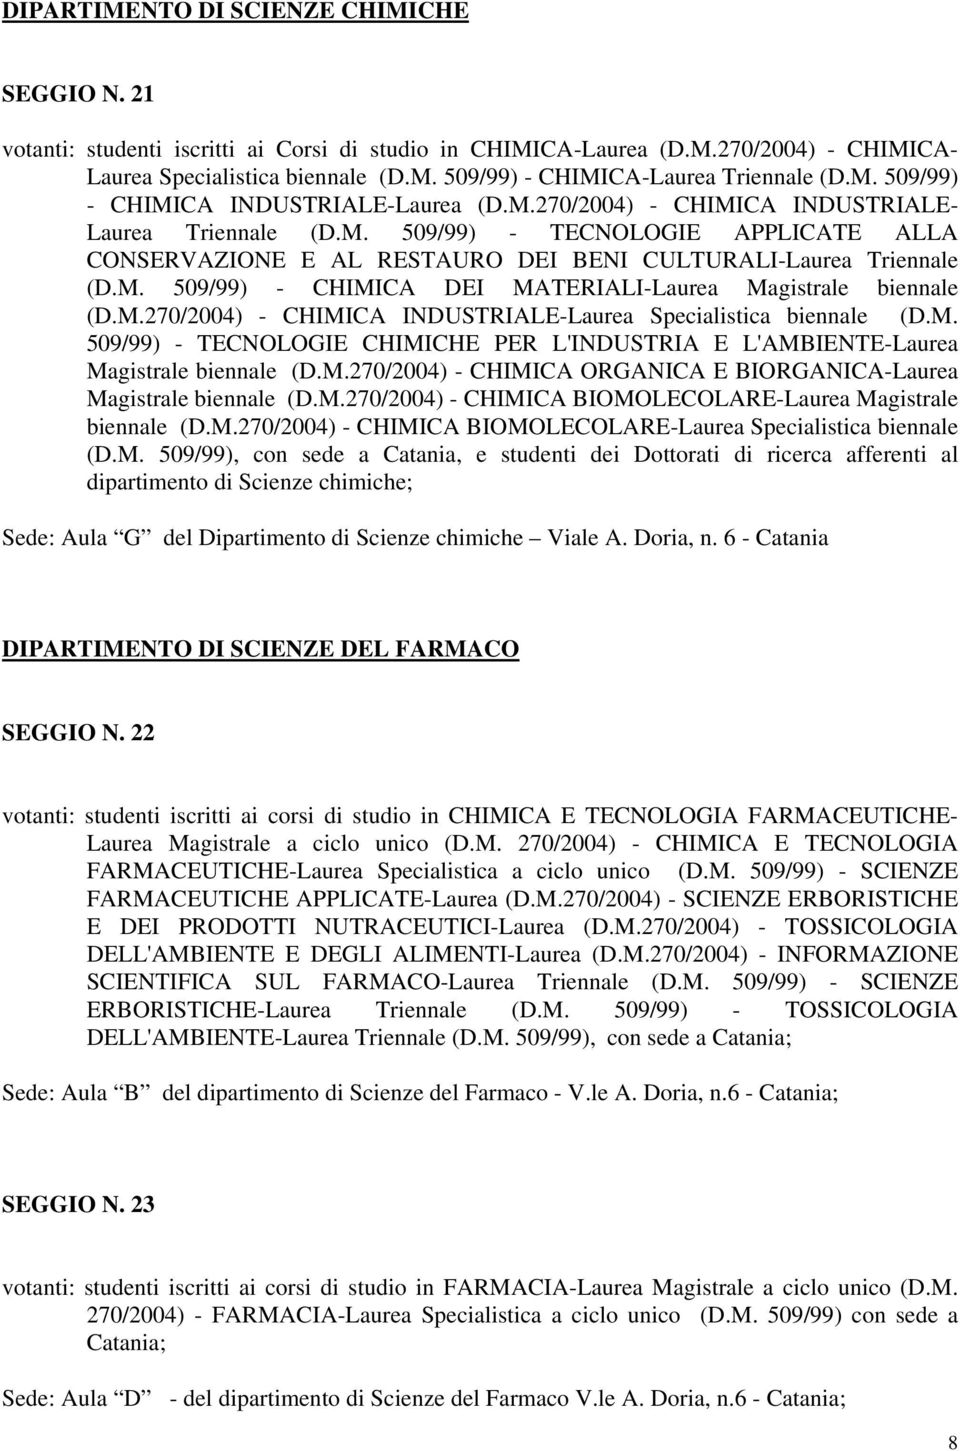 M. 509/99) - CHIMICA DEI MATERIALI-Laurea Magistrale biennale (D.M.270/2004) - CHIMICA INDUSTRIALE-Laurea Specialistica biennale (D.M. 509/99) - TECNOLOGIE CHIMICHE PER L'INDUSTRIA E L'AMBIENTE-Laurea Magistrale biennale (D.